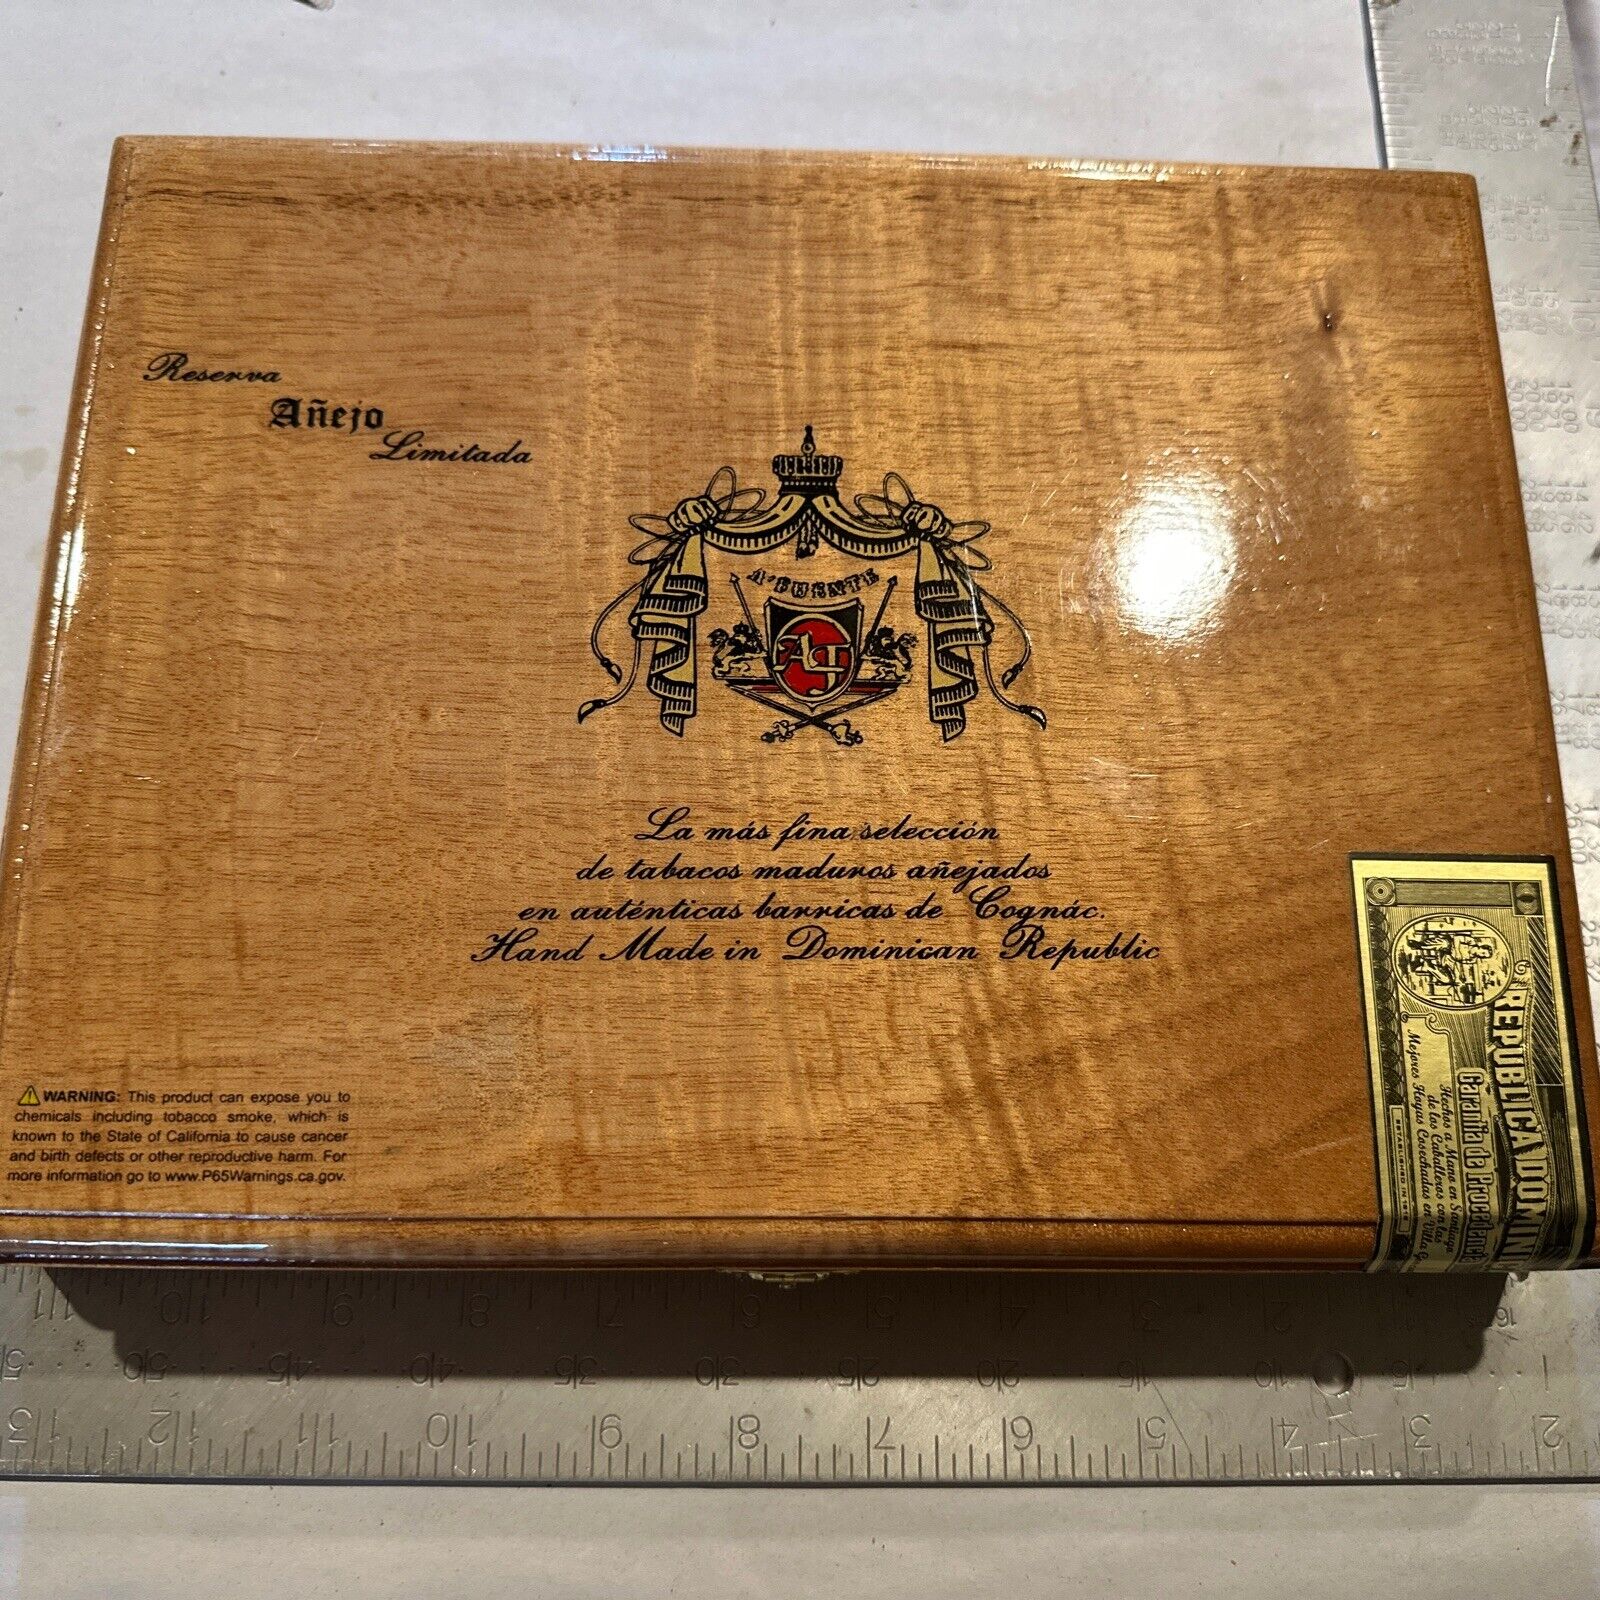 Arturo Fuente ANEJO Reserva Limitada 49 Xtra Viejo  Cigar Box Opusx Opus X